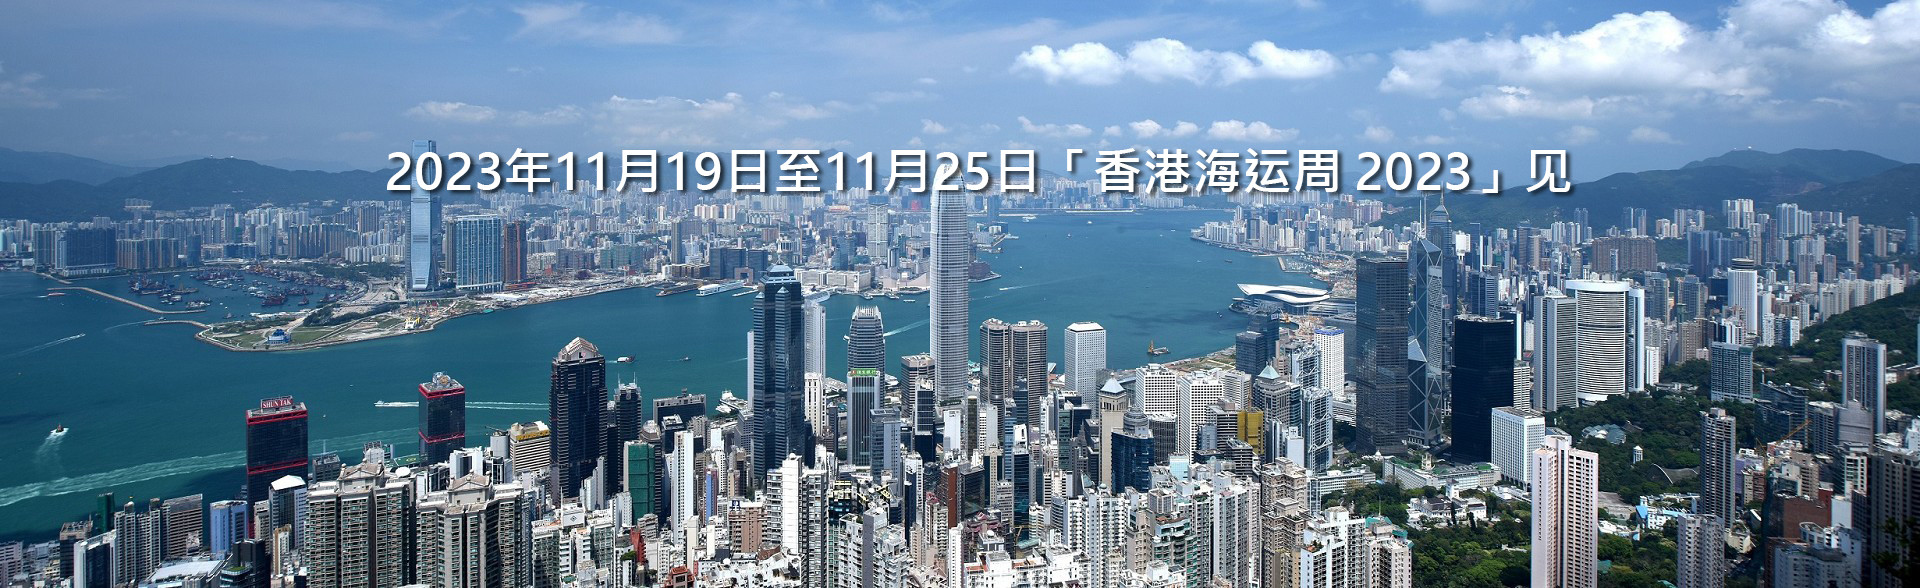 2023 年 11 月 19至25 日「香港海运周2023」见